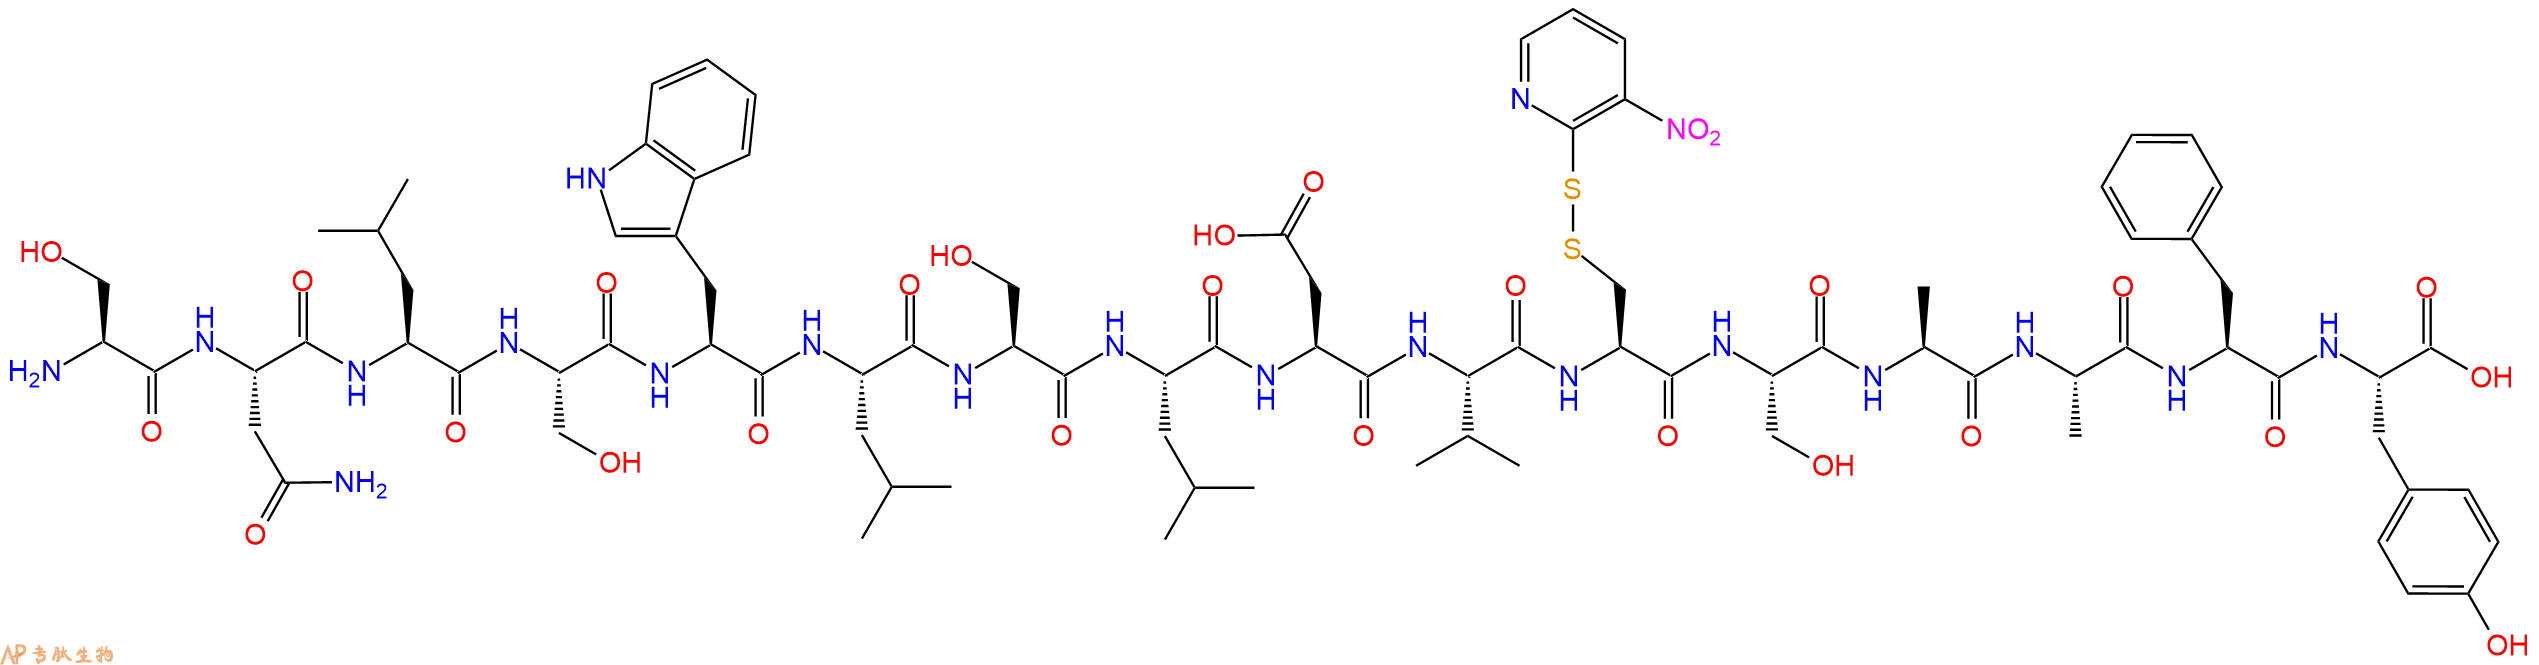 专肽生物产品H2N-Ser-Asn-Leu-Ser-Trp-Leu-Ser-Leu-Asp-Val-Cys(Np